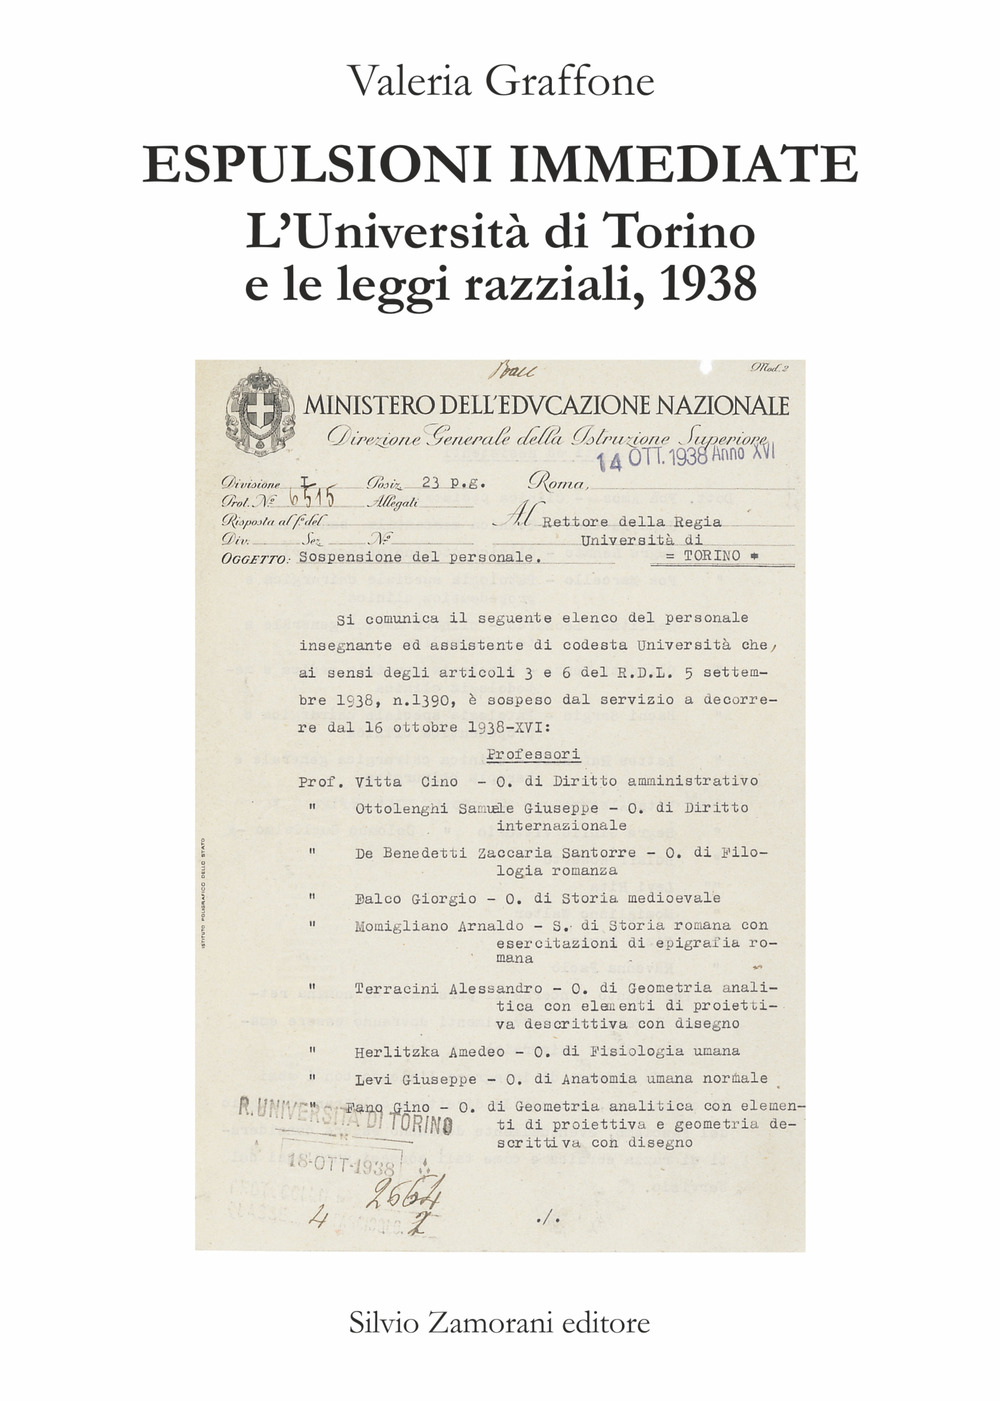 Espulsioni immediate. L'Università di Torino e le leggi razziali, 1938